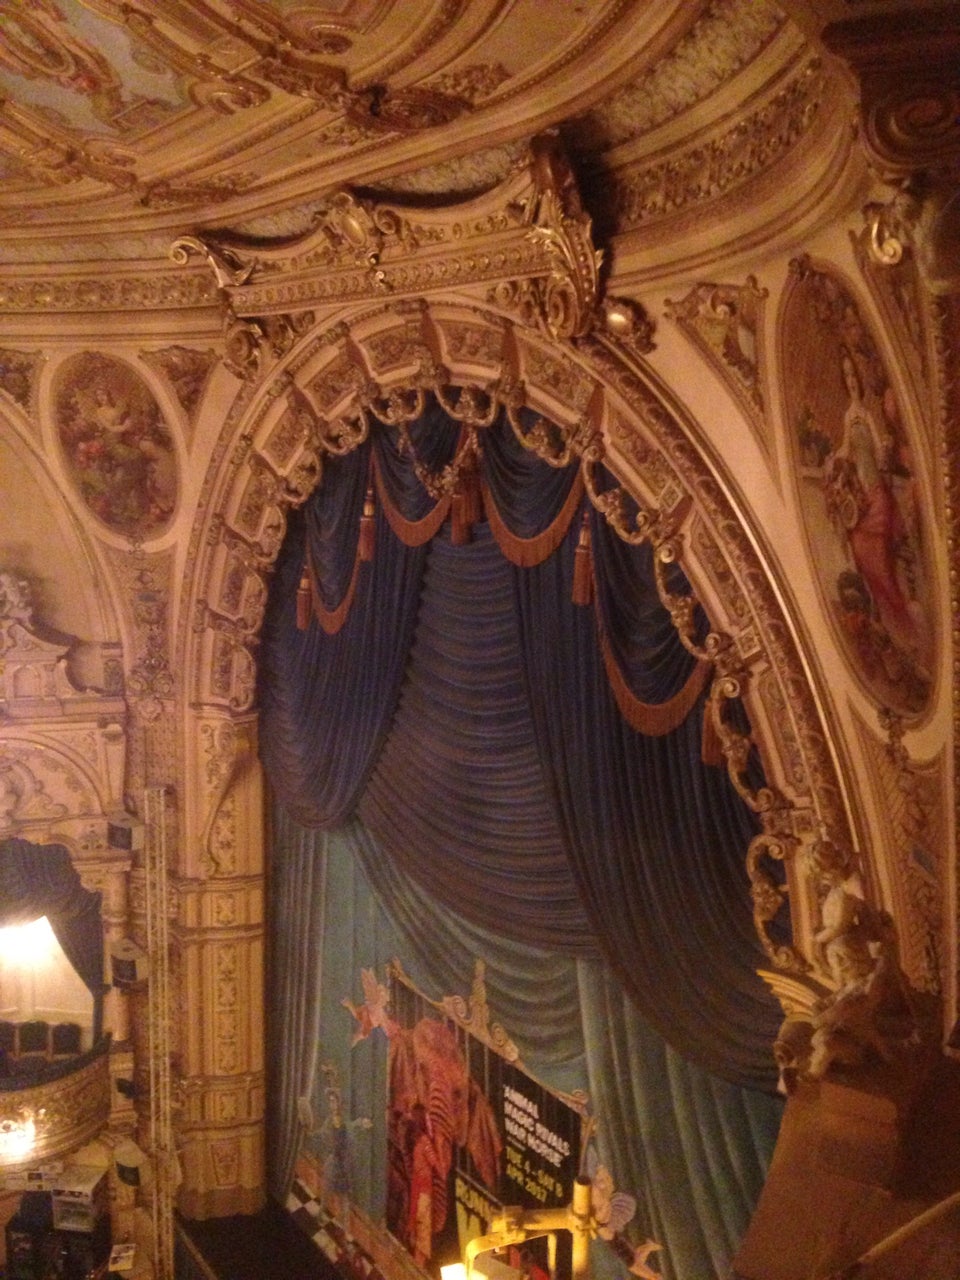 Photo of Grand Theatre